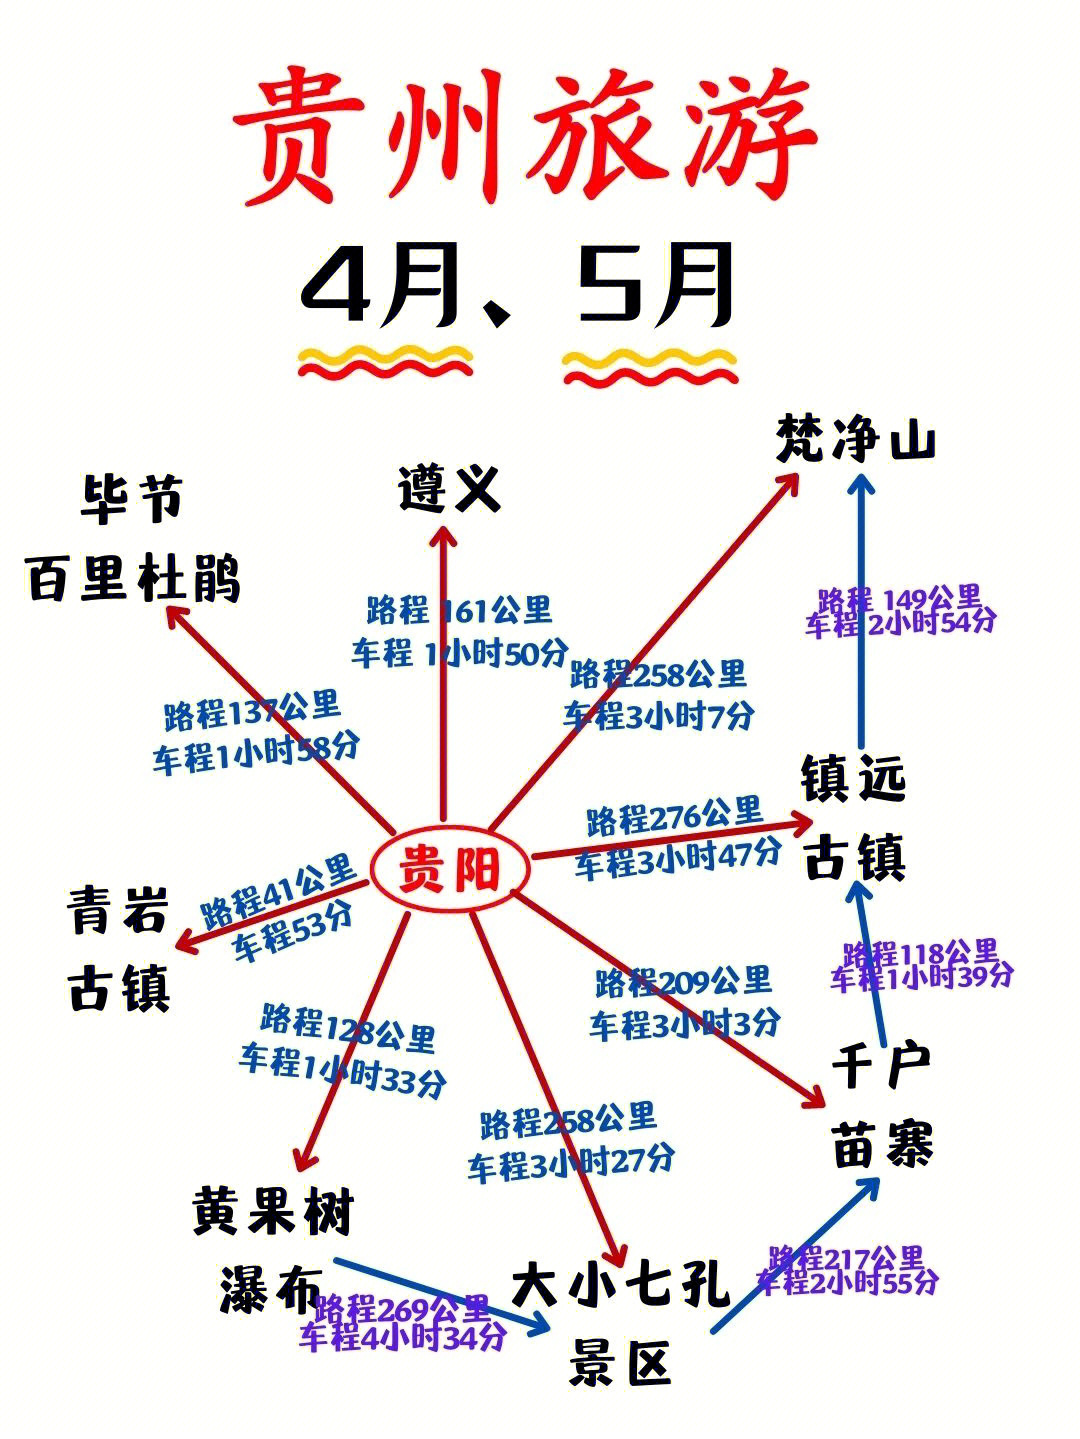 贵州重点旅游景点地图图片